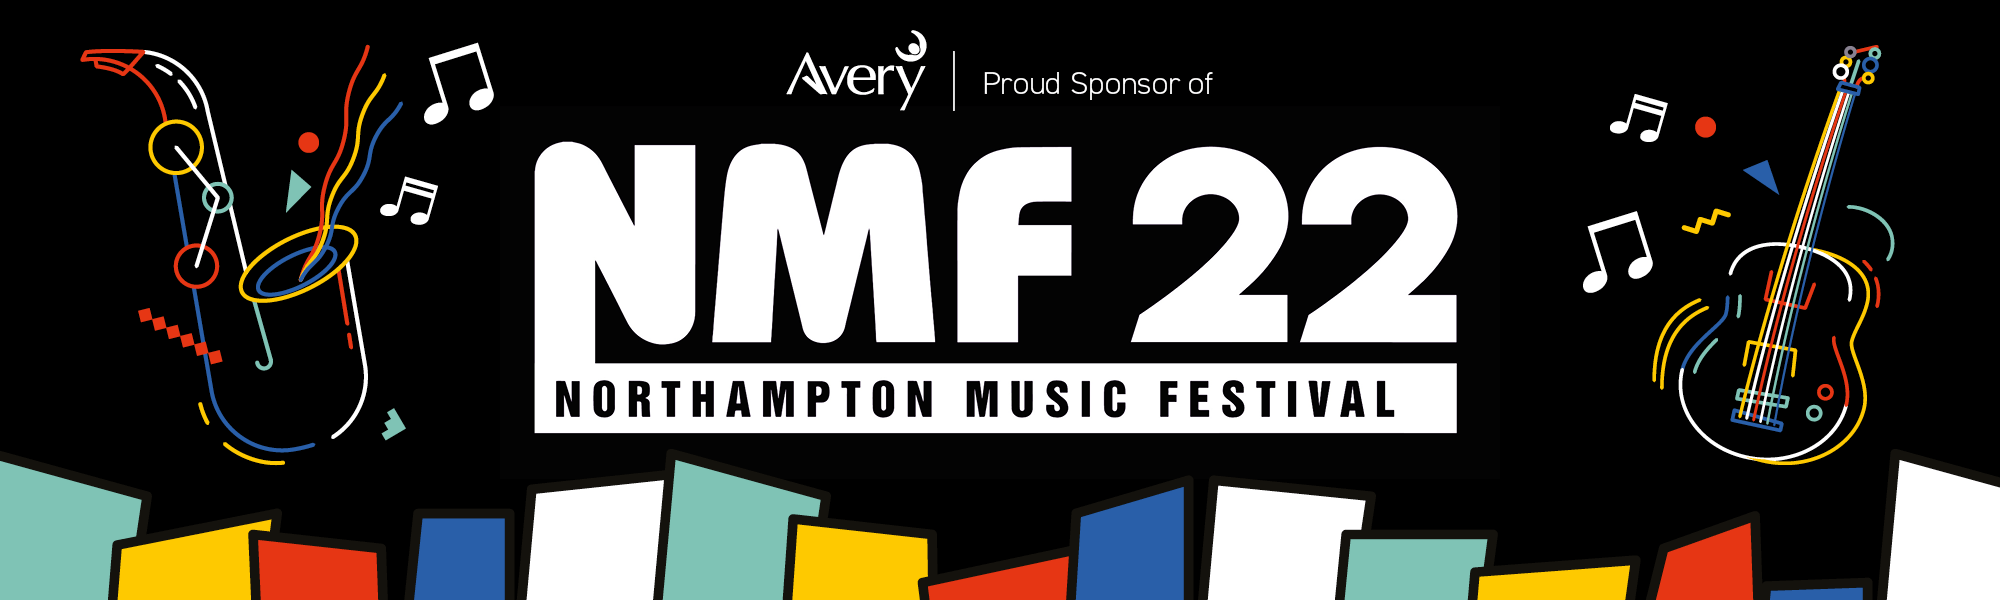 NN Music Festival 22 web banner